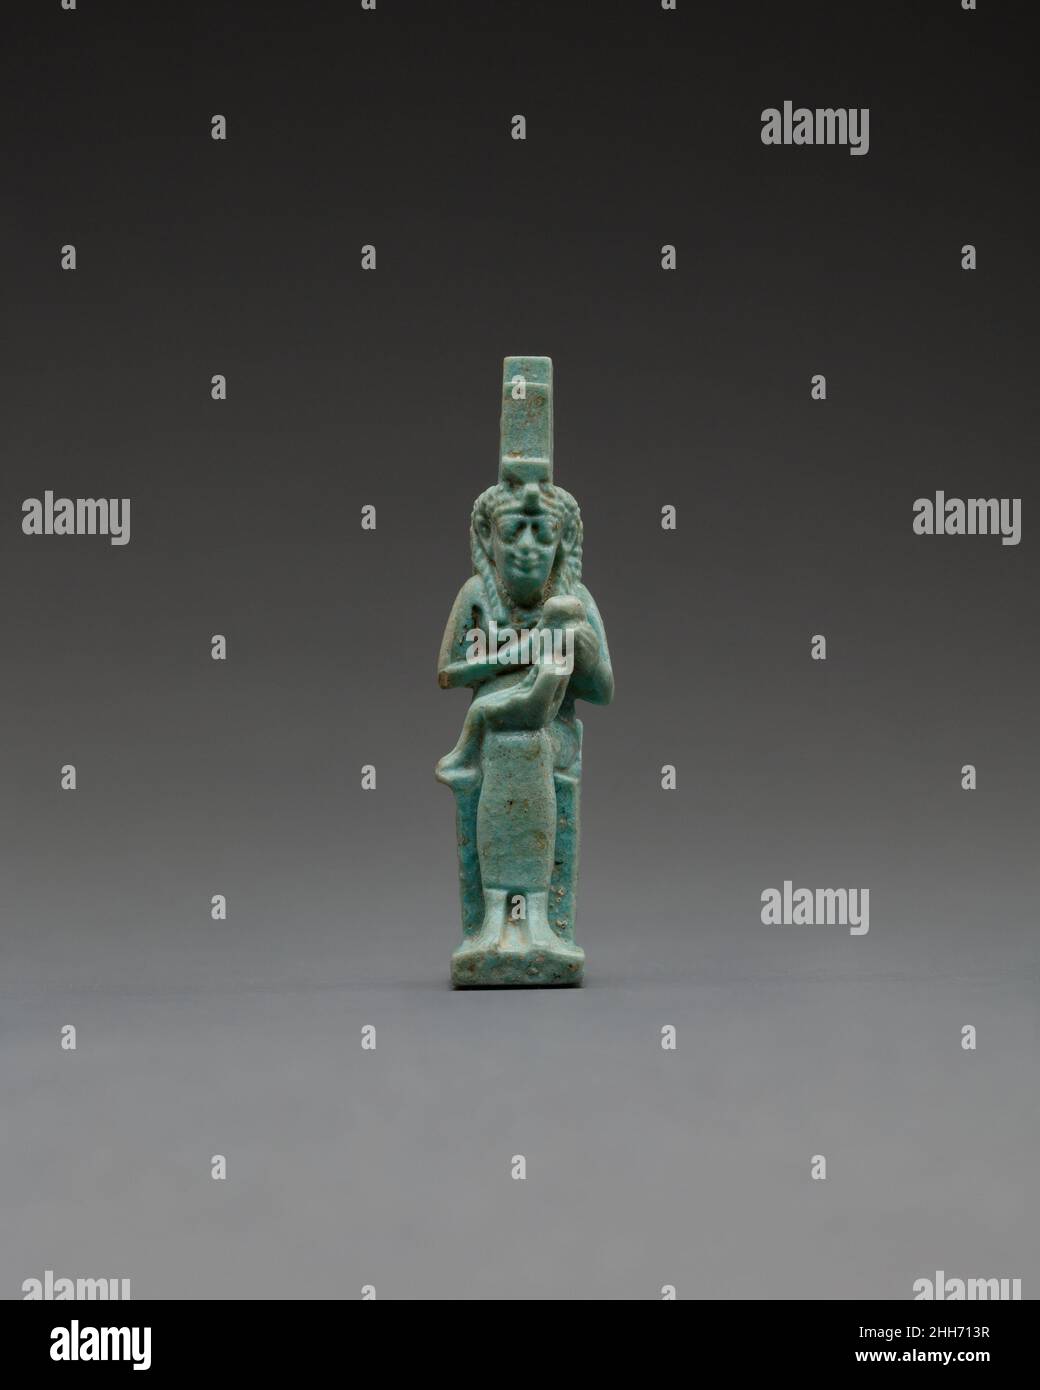 Figur des Isis-Pflegepersonals Horus ca. 332–30 v. Chr. Ptolemäische Periode Dieses Amulett zeigt Isis lactans, Isis stillende Horus, ihren posthumen Sohn mit dem gott Osiris. Die Göttin, identifiziert durch die Thronhieroglyphe auf ihrem Kopf, sitzt auf einem Blocksitz, der an der Seite mit einem Federmuster geschmückt ist und vielleicht die Flügel symbolisiert, mit denen sie gezeigt werden kann, oder ihre Form als Drachen (Raubvögel). Ein gefaltetes Tuch wird so dargestellt, als würde es den Sitz bedecken und über die niedrige Rückenlehne drapieren. ISIS wurde als die Verkörperung einer schützenden, pflegenden Mutter angesehen; kleine Figuren wie diese hätten diese Eigenschaften für hervorgerufen Stockfoto